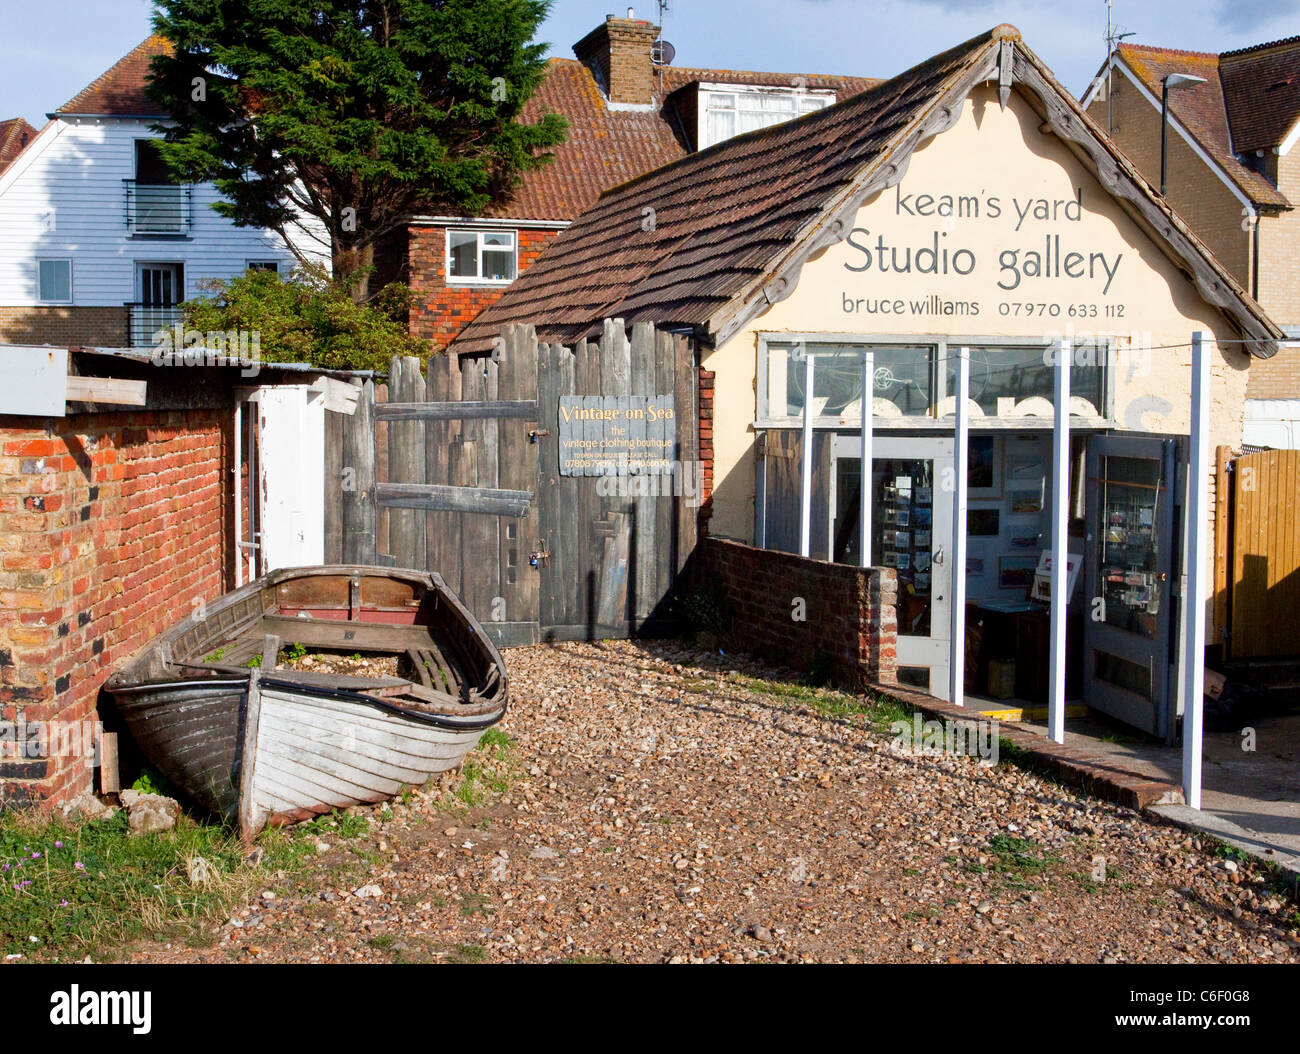 Atelier galerie d'art de cour Keams Port de Whitstable, Kent, Angleterre, Royaume-Uni Banque D'Images